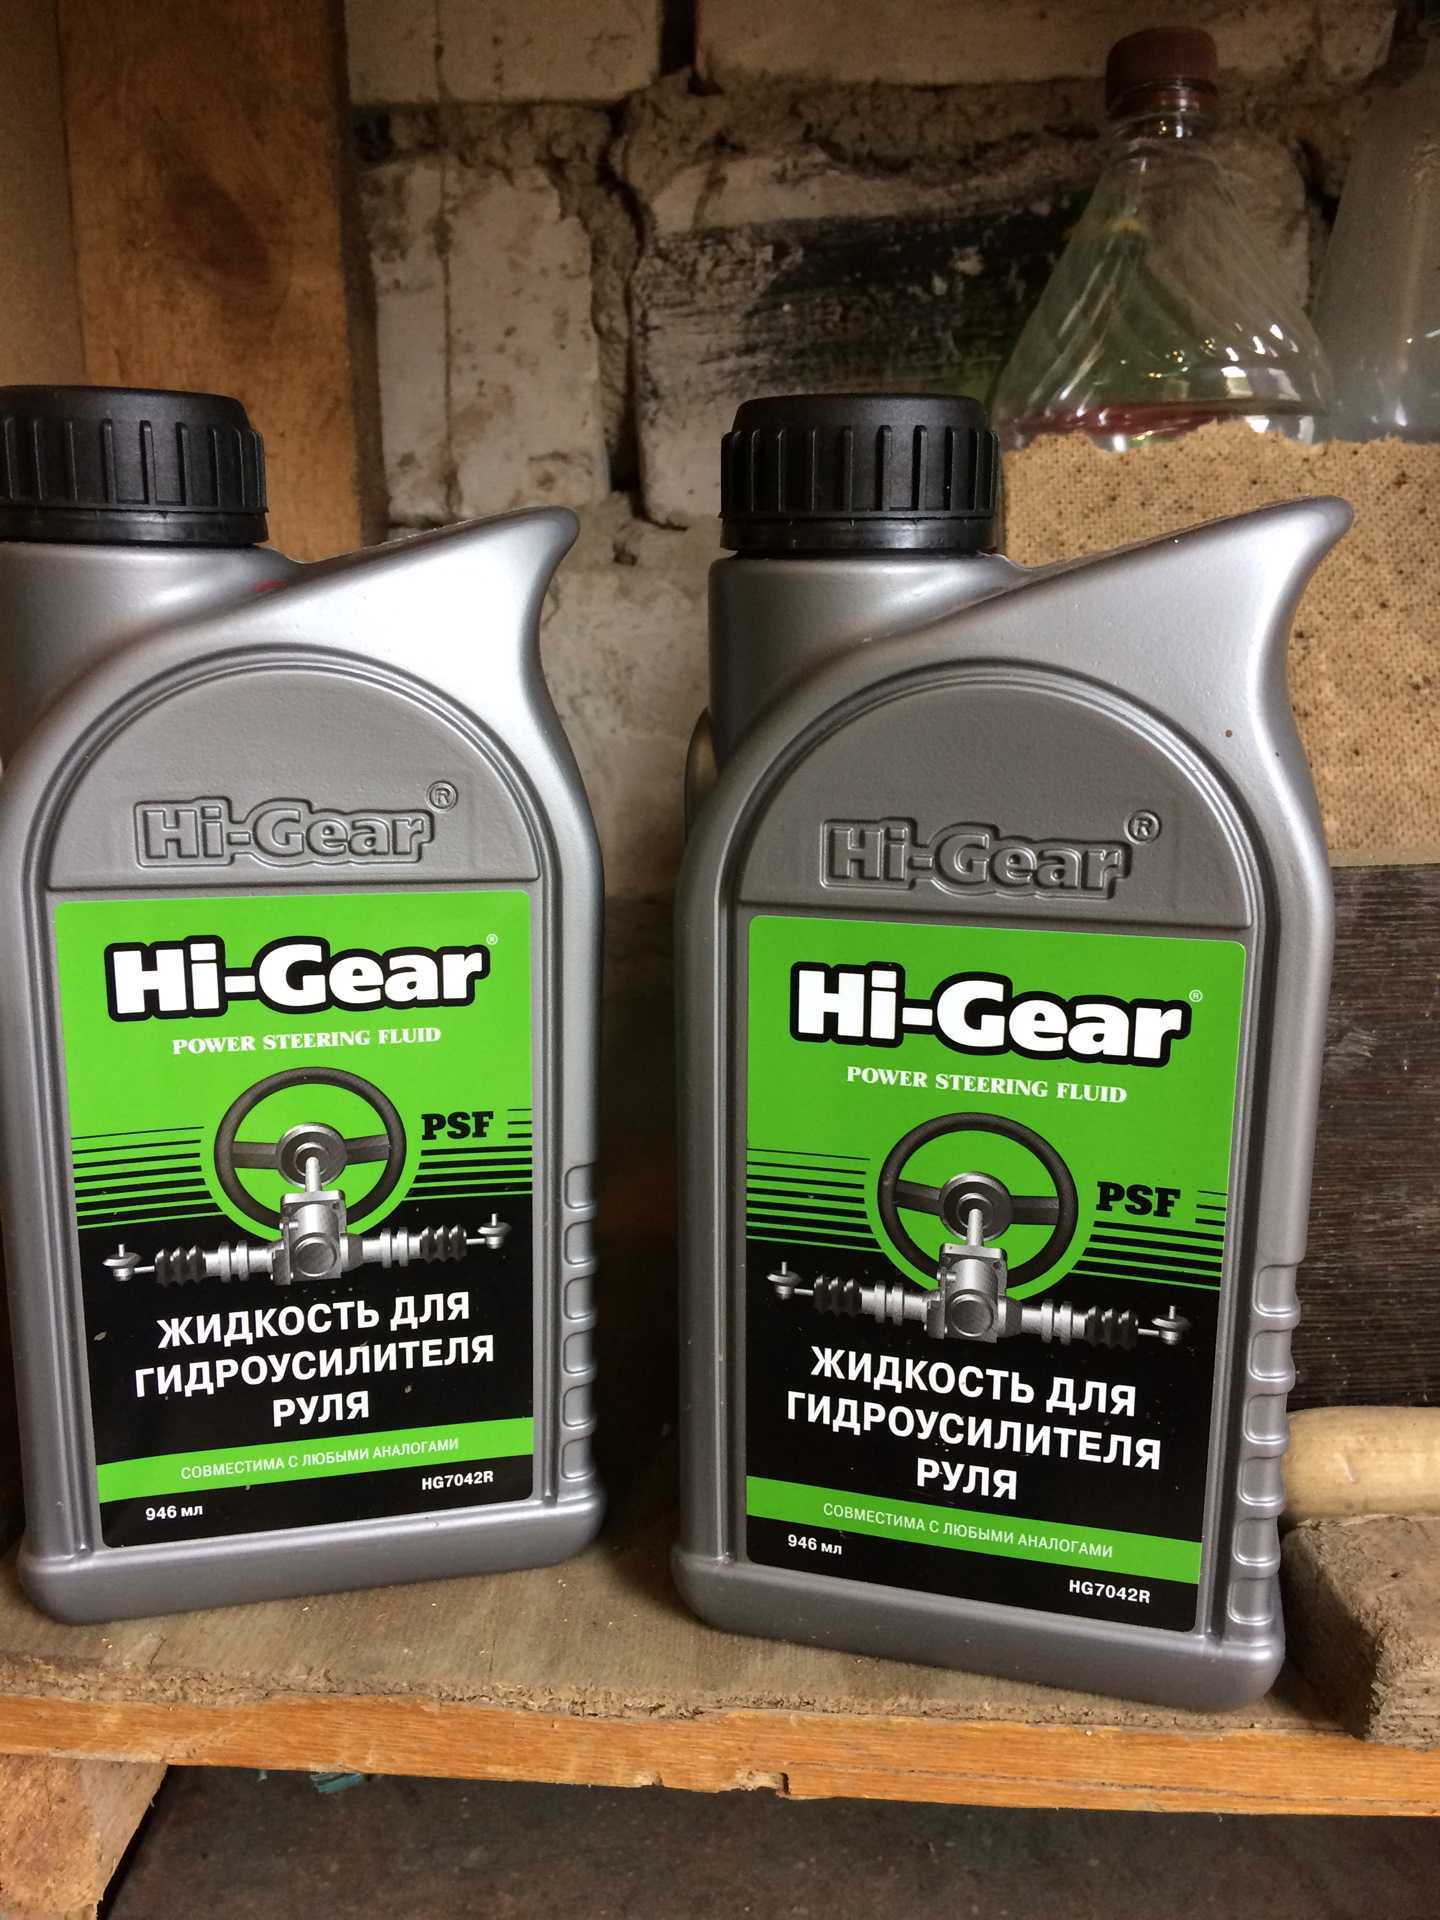 Масло в гур. Hg7042r жидкость для гидроусилителя руля. Hi-Gear hg7042r. Hi-Gear psf 946 мл hg7042r. Жидкость ГУР УАЗ Патриот.